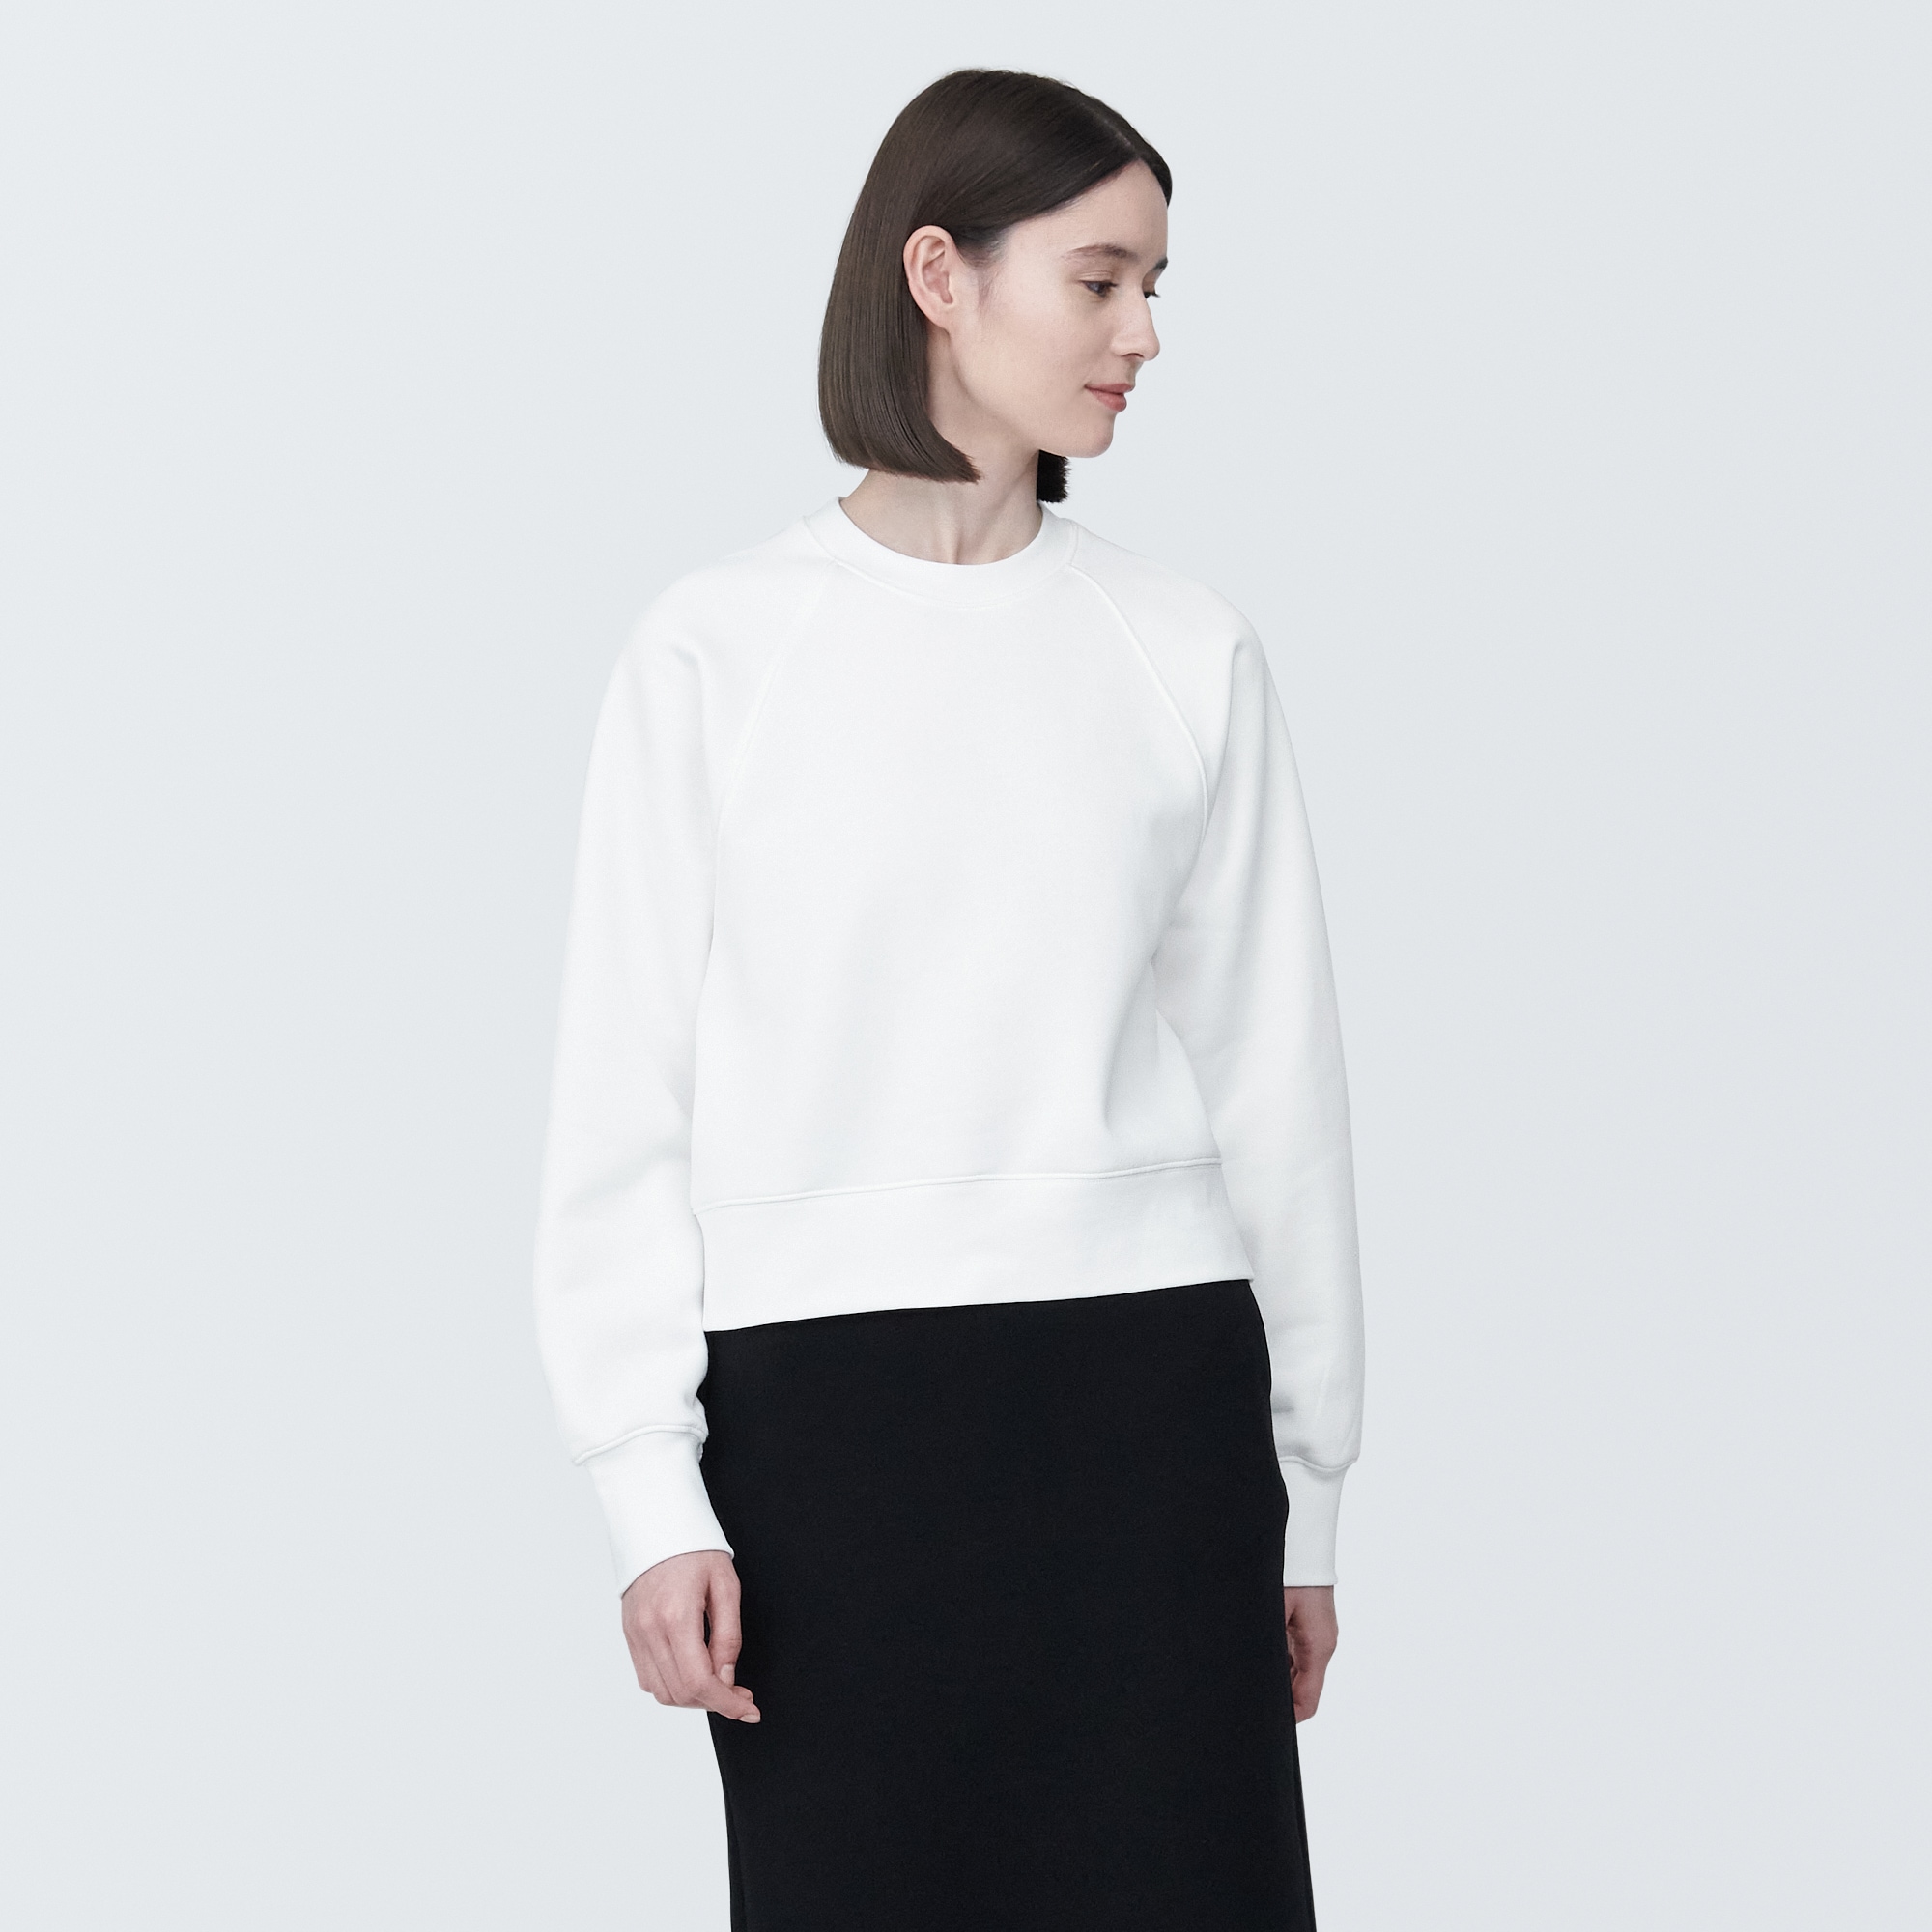 무인양품 일본 여성 스웨터 셔츠 크루넥 긴소매